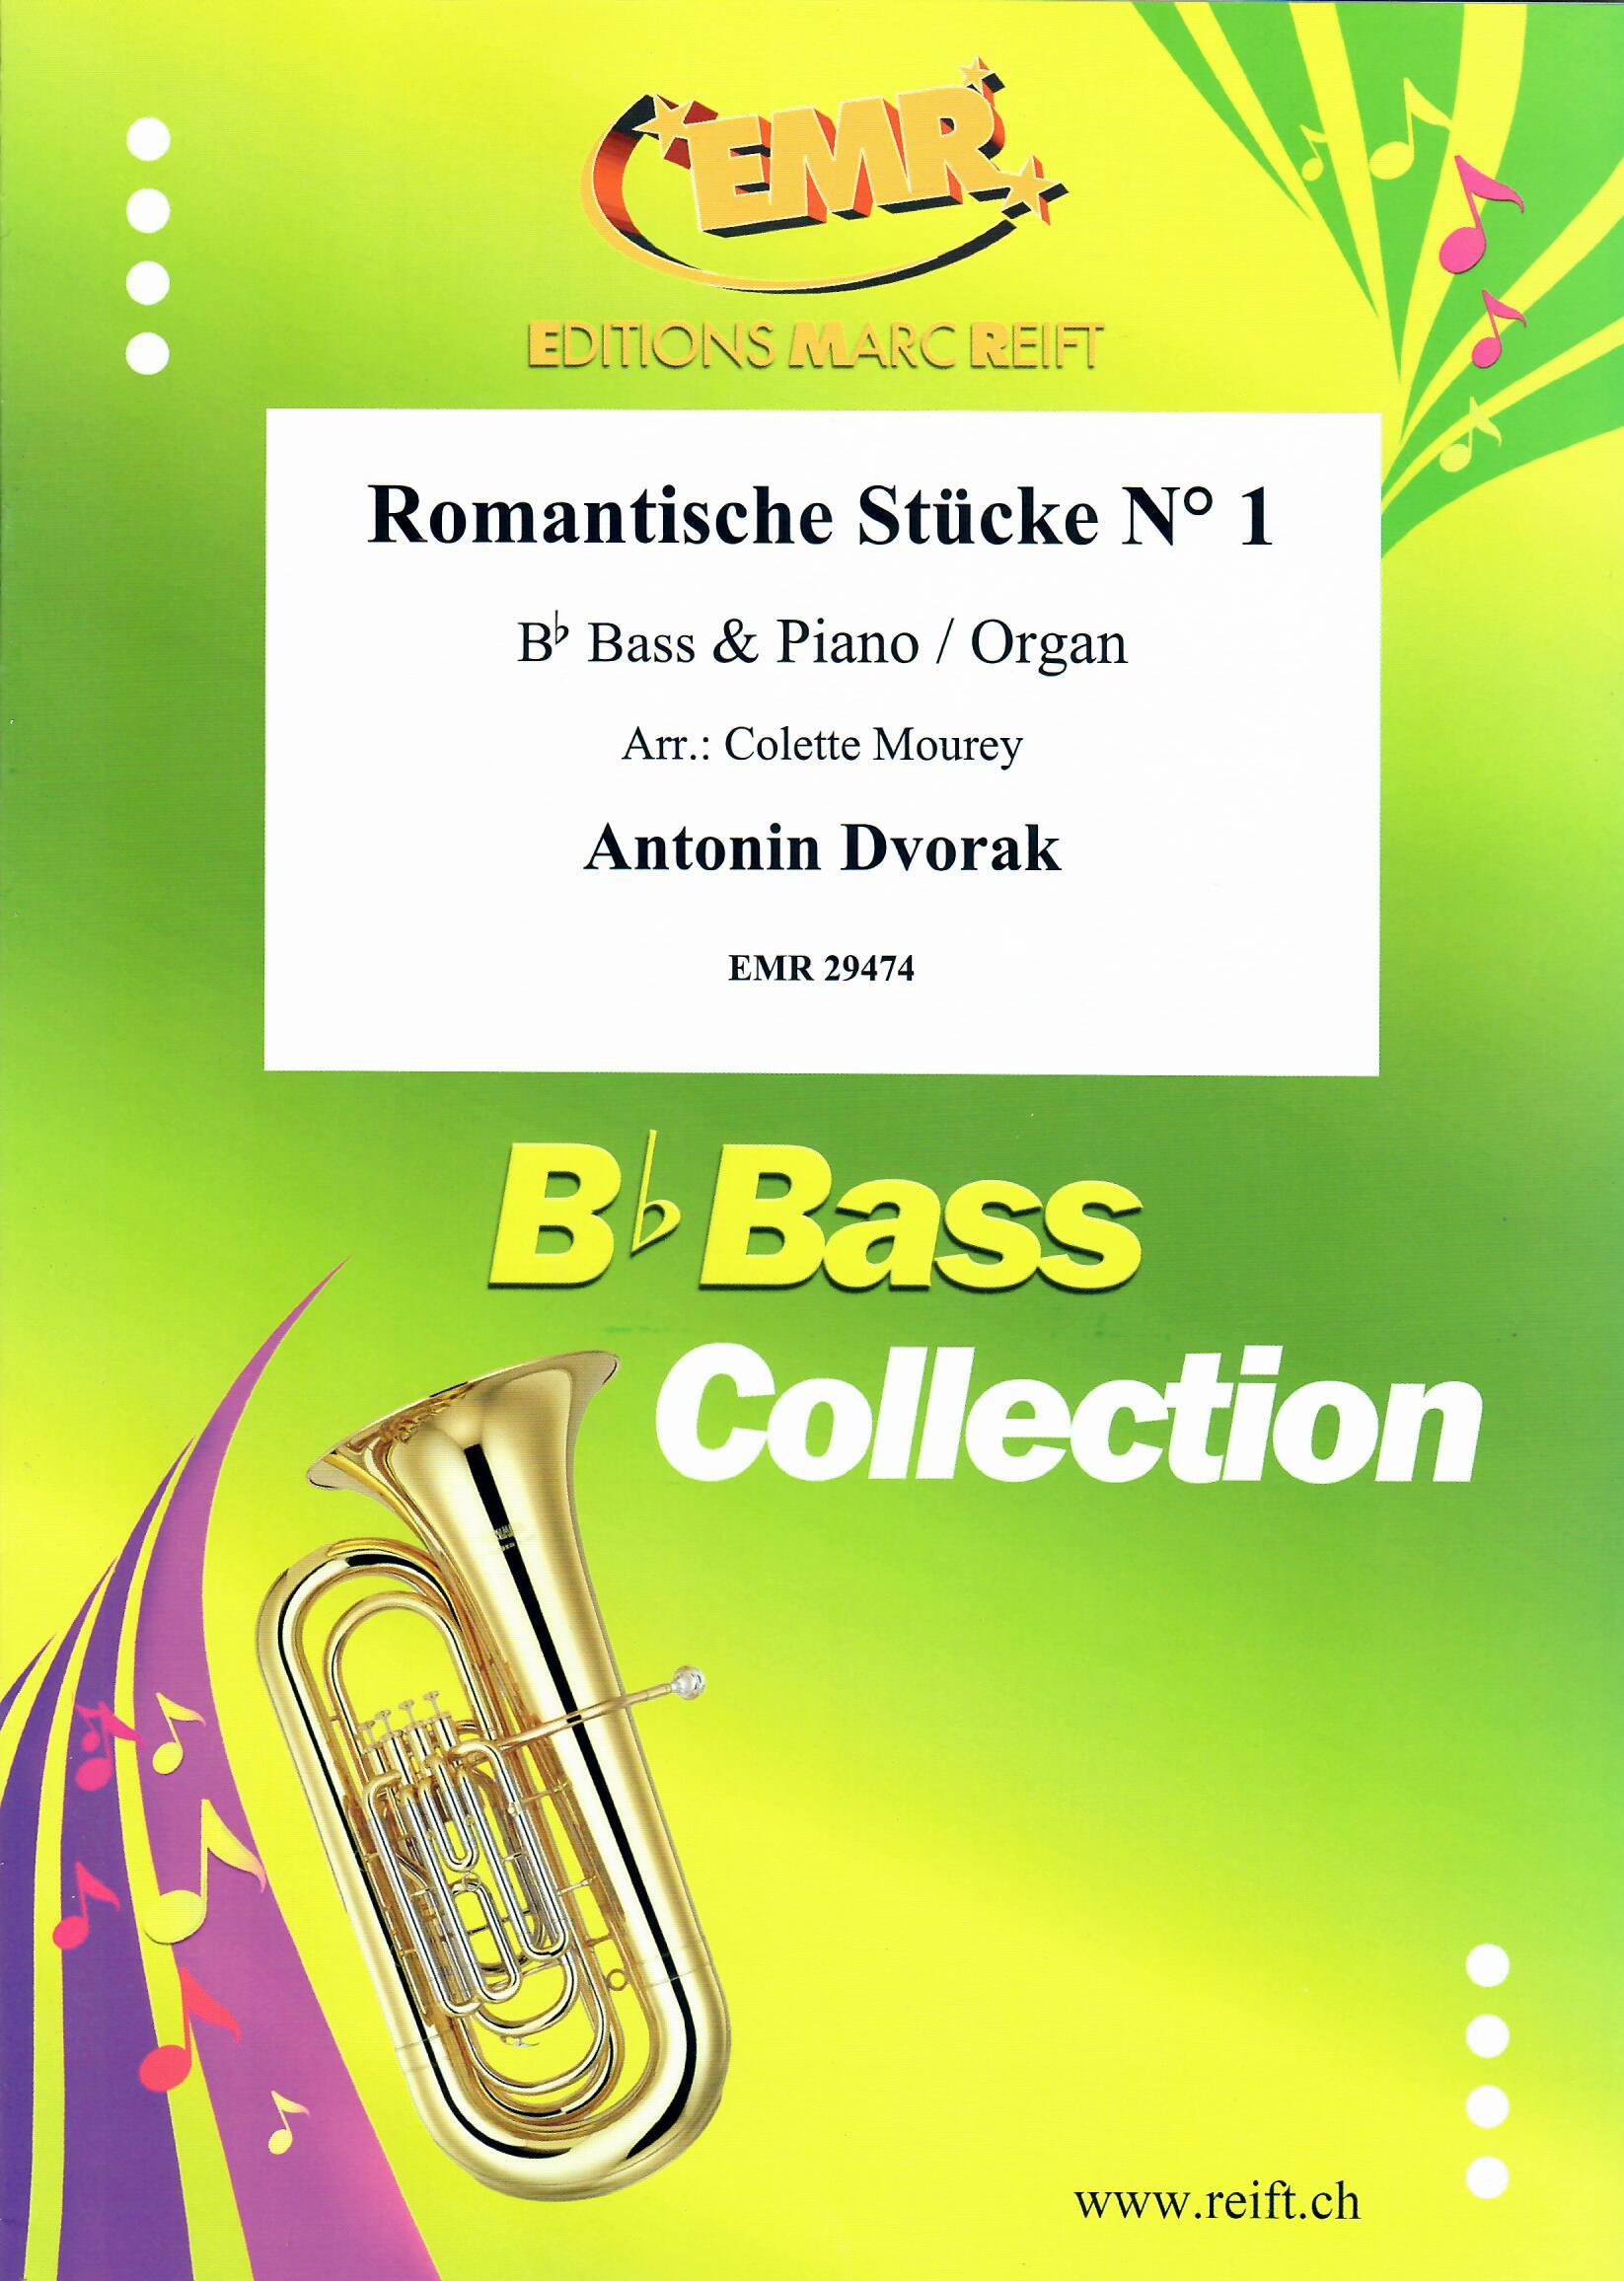 ROMANTISCHE STüCKE N° 1, SOLOS - E♭. Bass